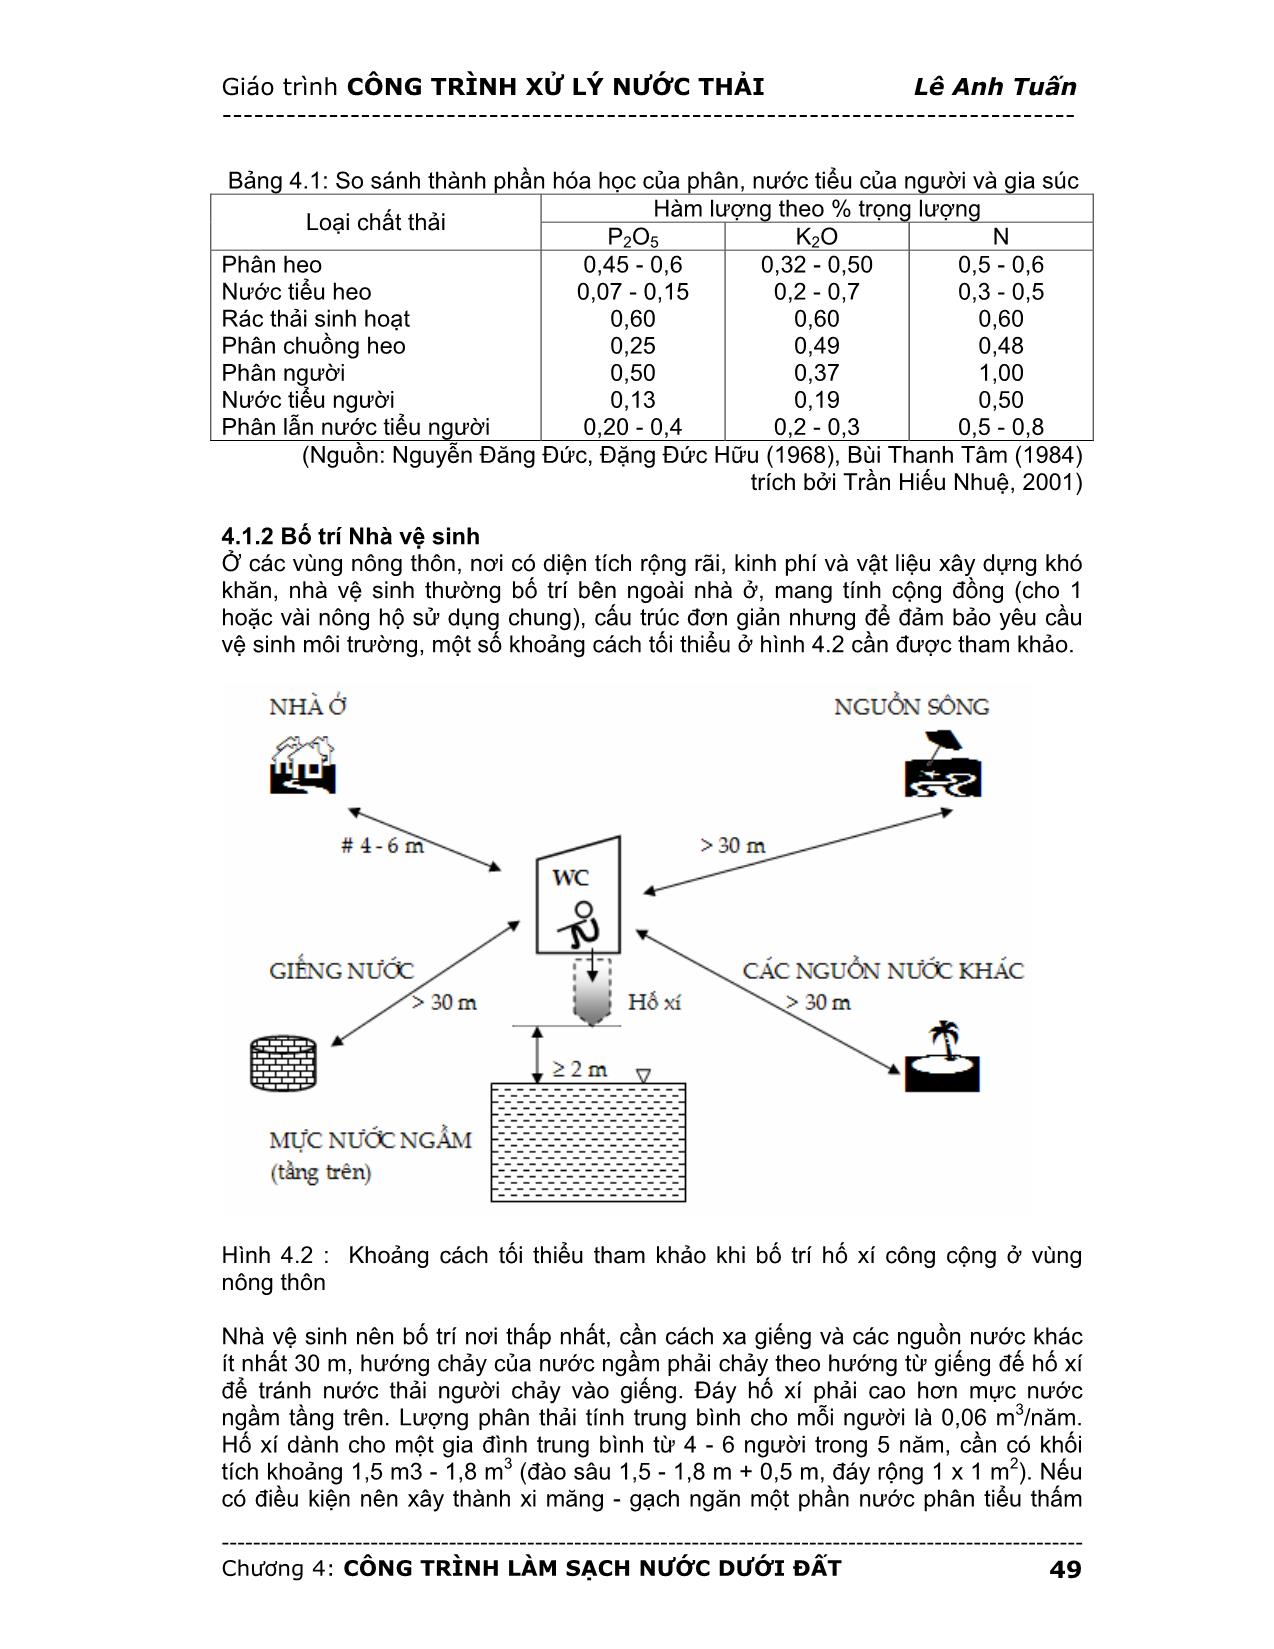 Giáo trình Công trình xử lý nước thải (Phần 2) trang 2